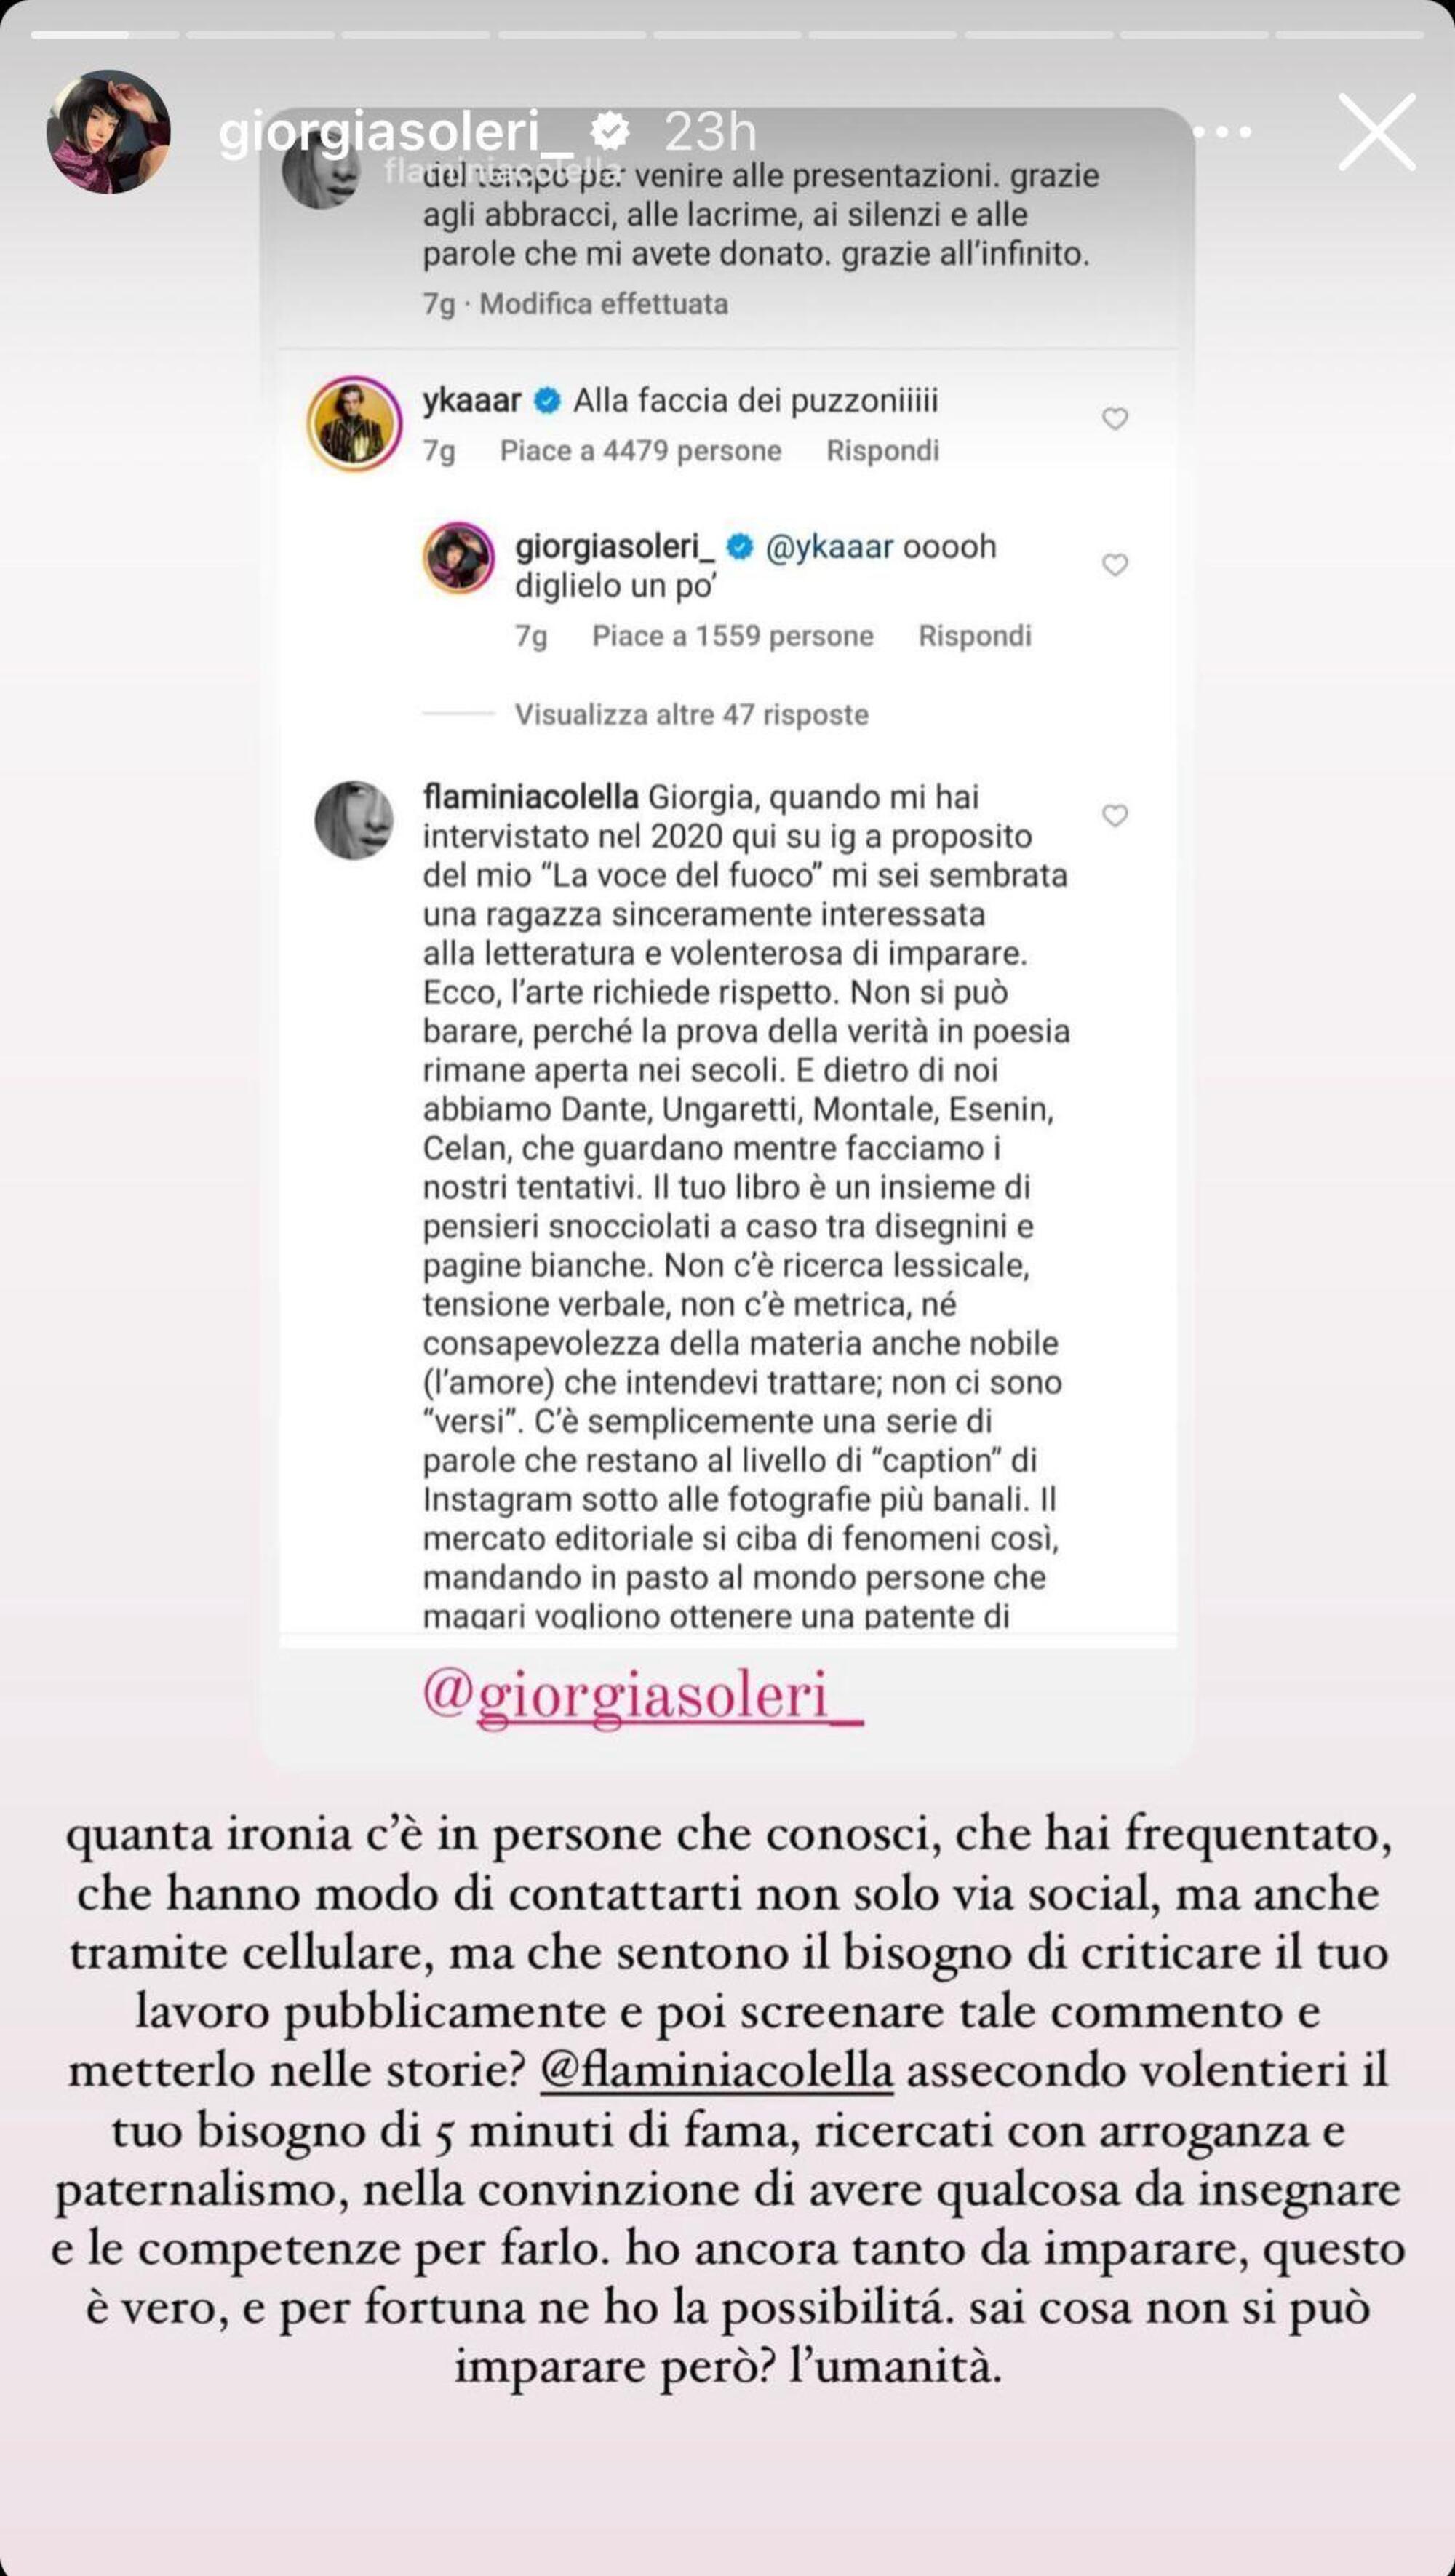 La risposta di Giorgia Soleri alla critica di Flaminia Colella